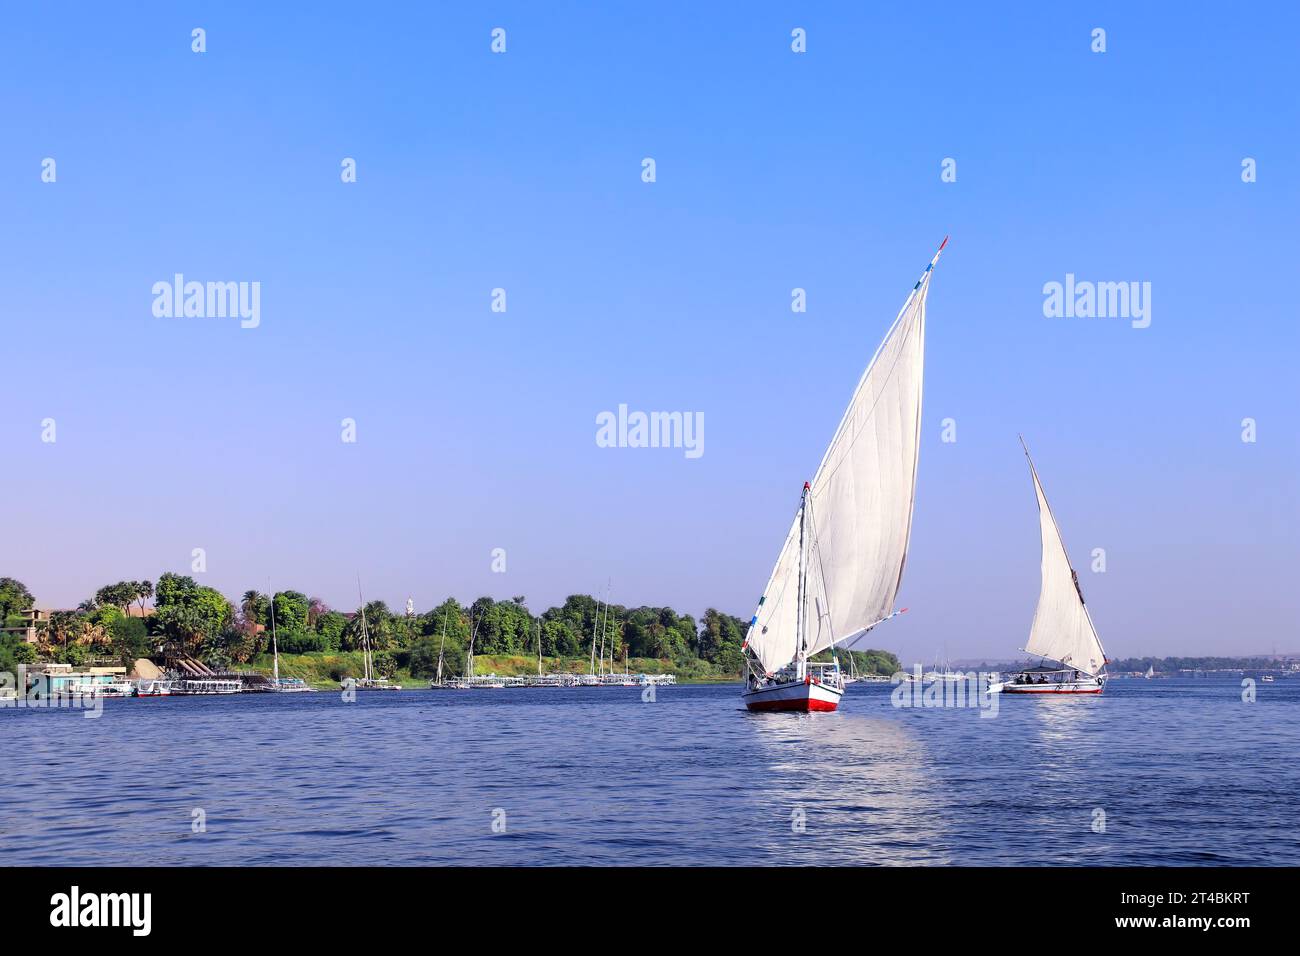 Bateau à voile traditionnel felouque, fleuve du Nil près d'Assouan, Egypte. Une attraction touristique célèbre - promenade en bateau à voile Banque D'Images